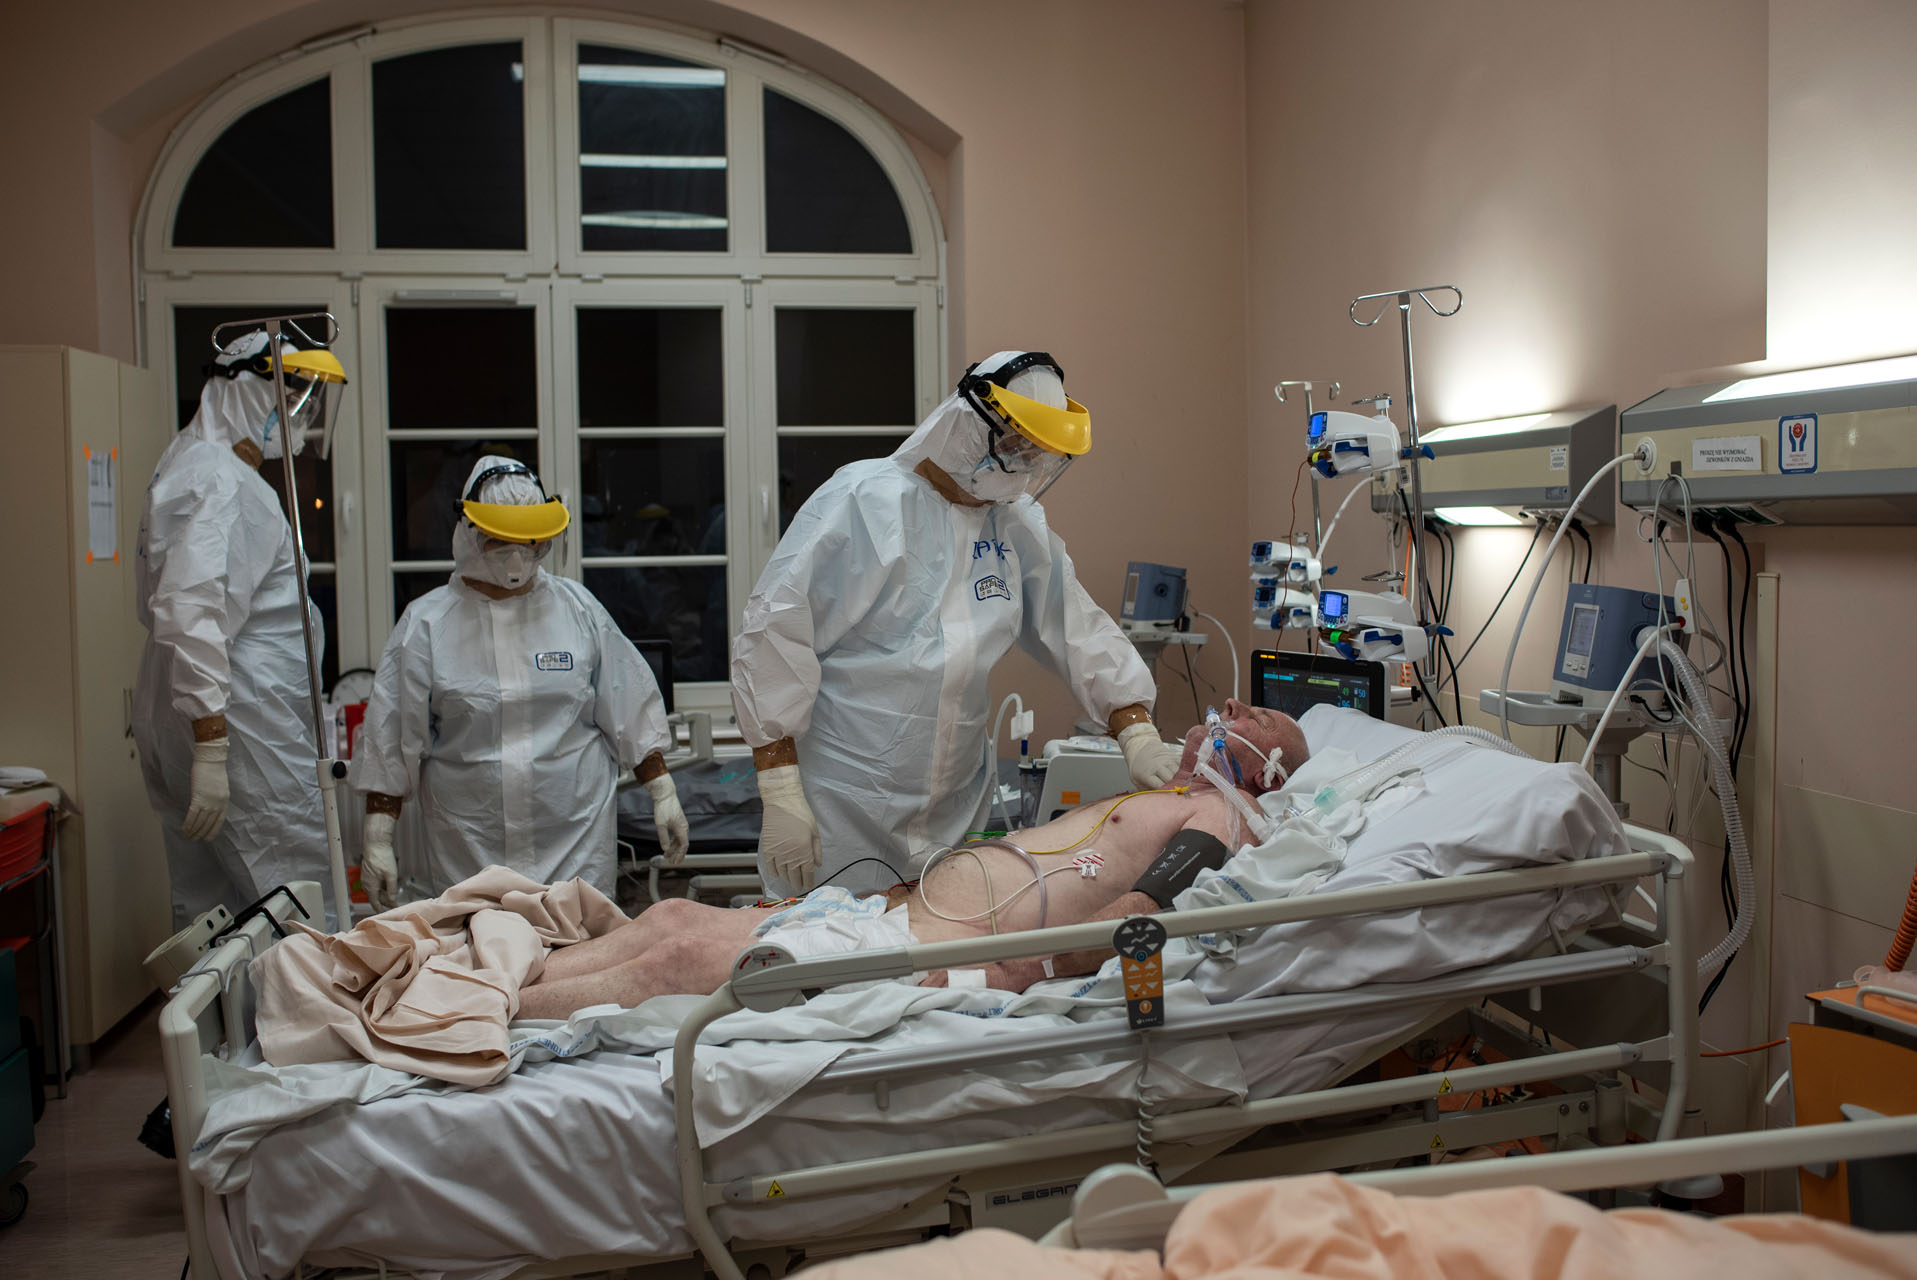 Pacjent przetransportowany z innego szpitala jest przygotowywany do podłączenia do respiratora. 

